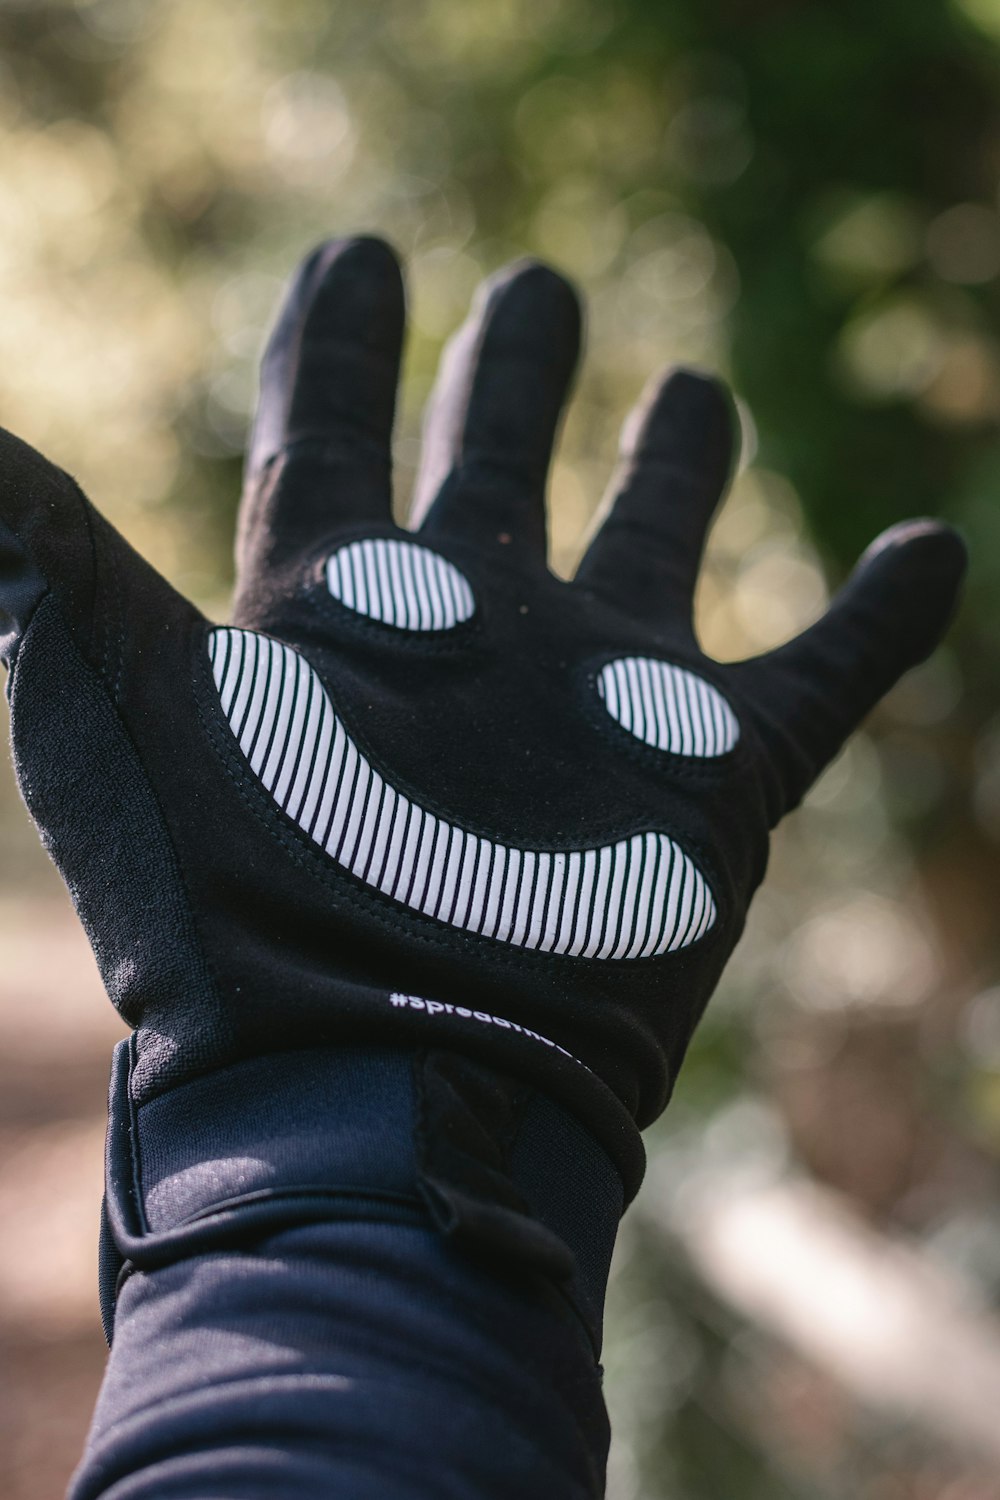 Deportes Meseta explique Foto Persona con guantes nike blancos y negros – Imagen Fuera de gratis en  Unsplash